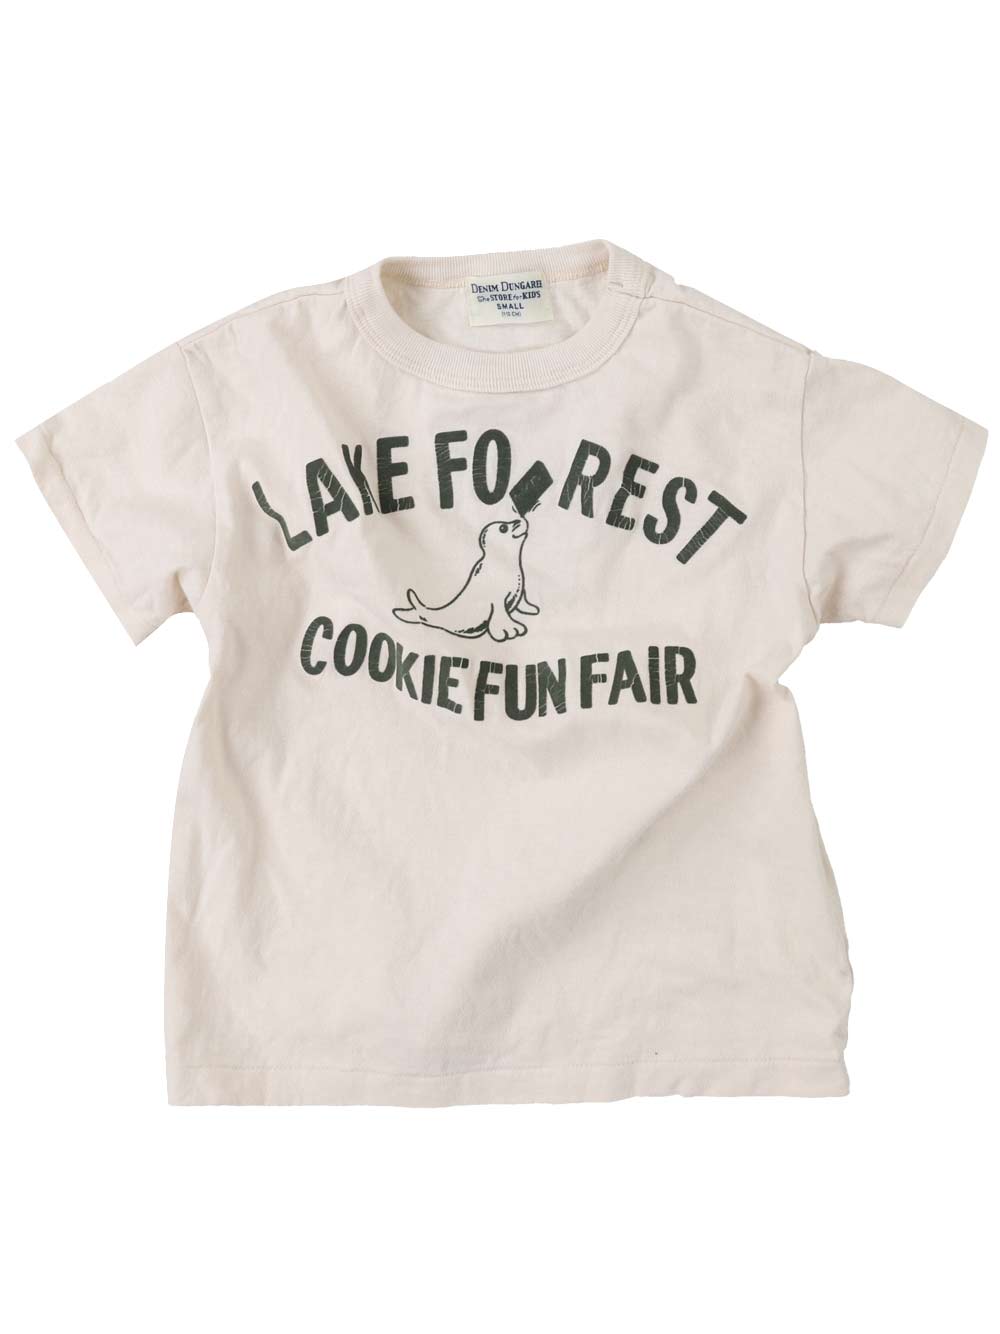 Cookie Fun Fair T-Shirt